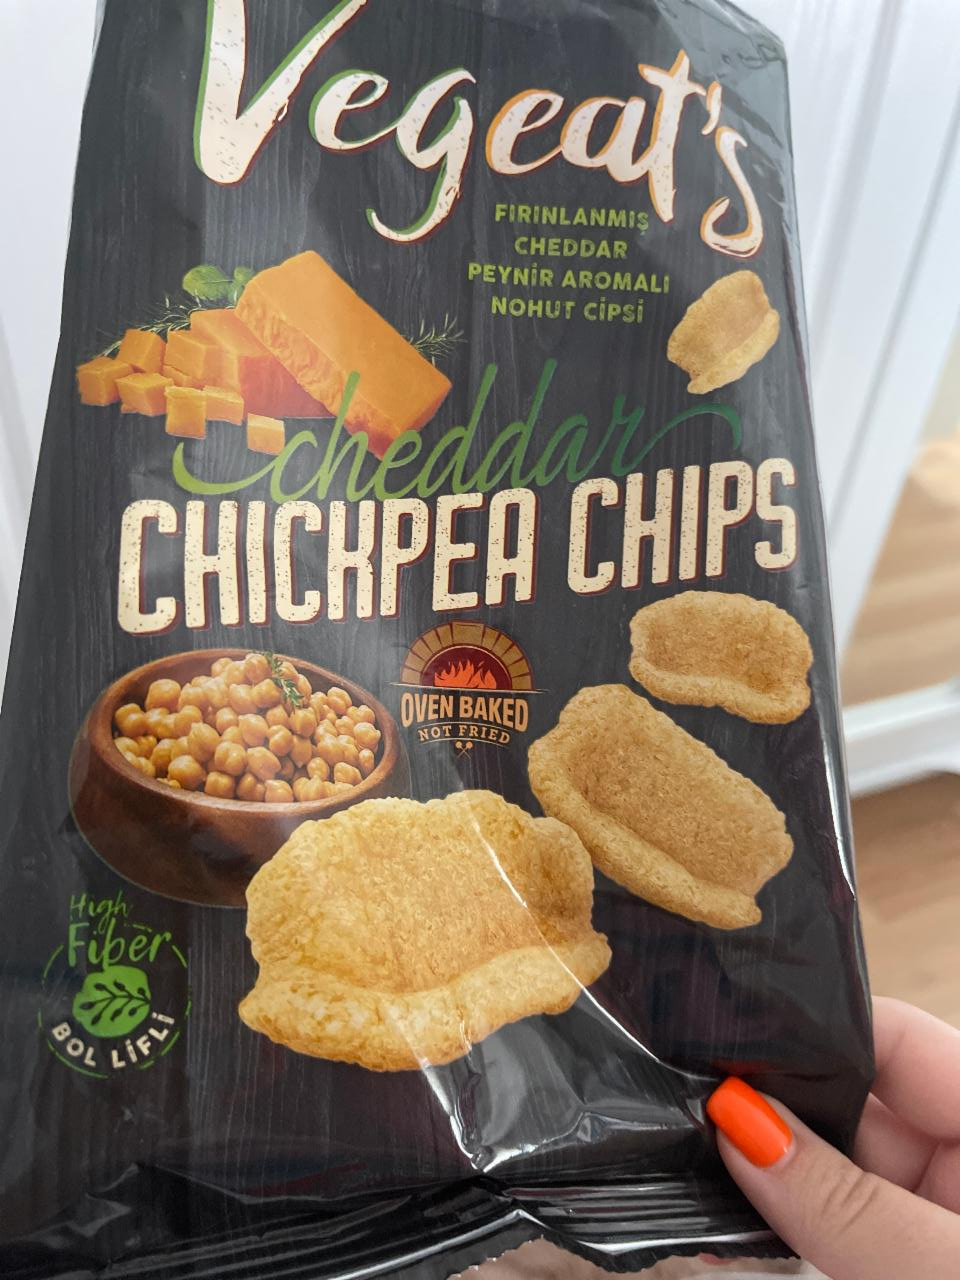 Фото - гороховые чипсы с чеддером Chickpea chips with cheddar Vegeat’s